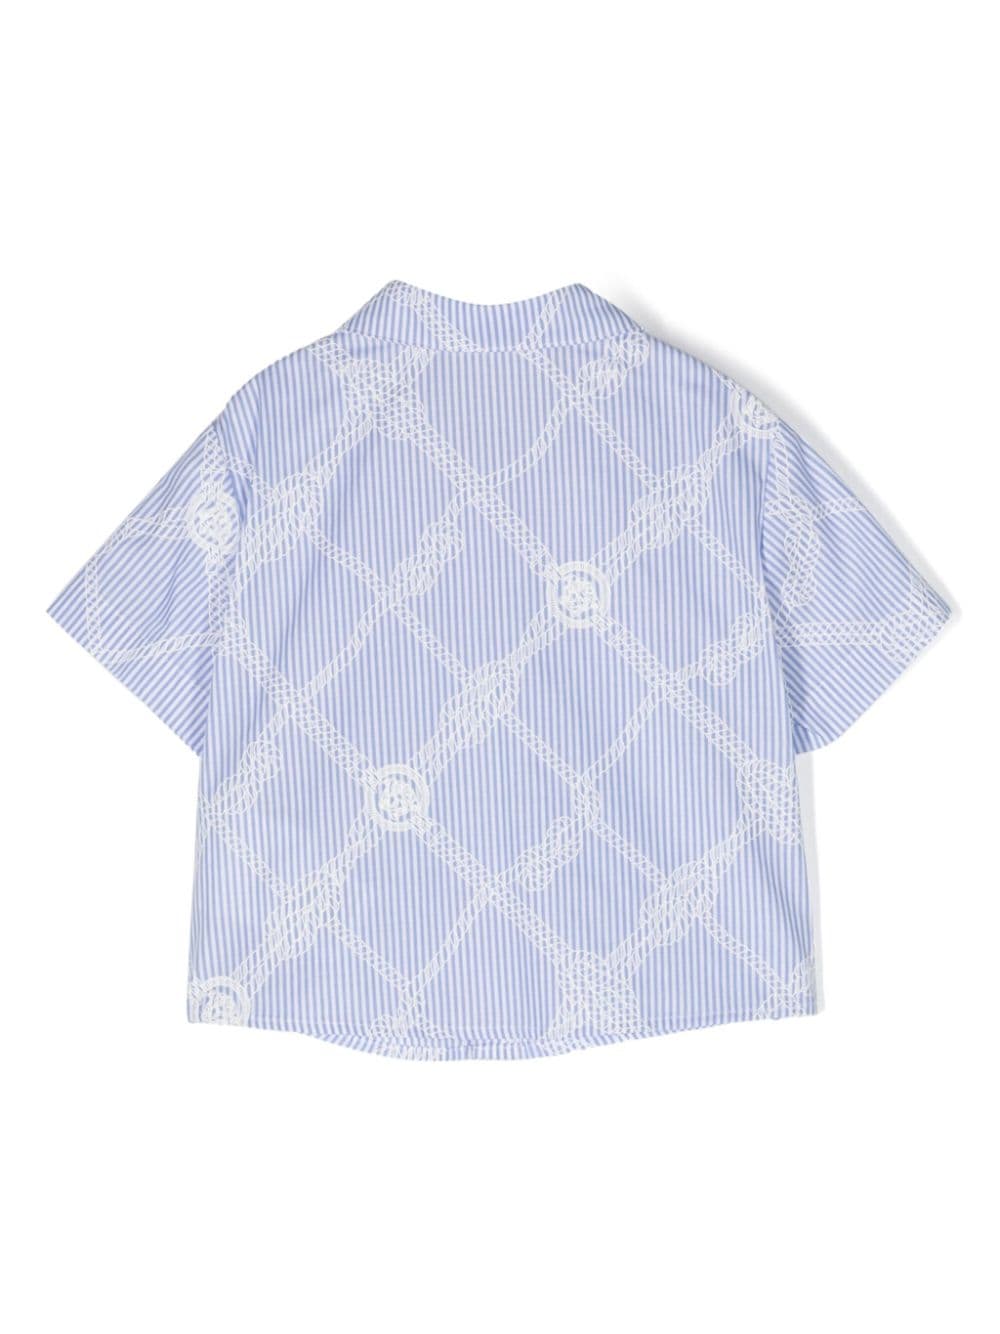 Chemise nouveau-né bleu/blanc